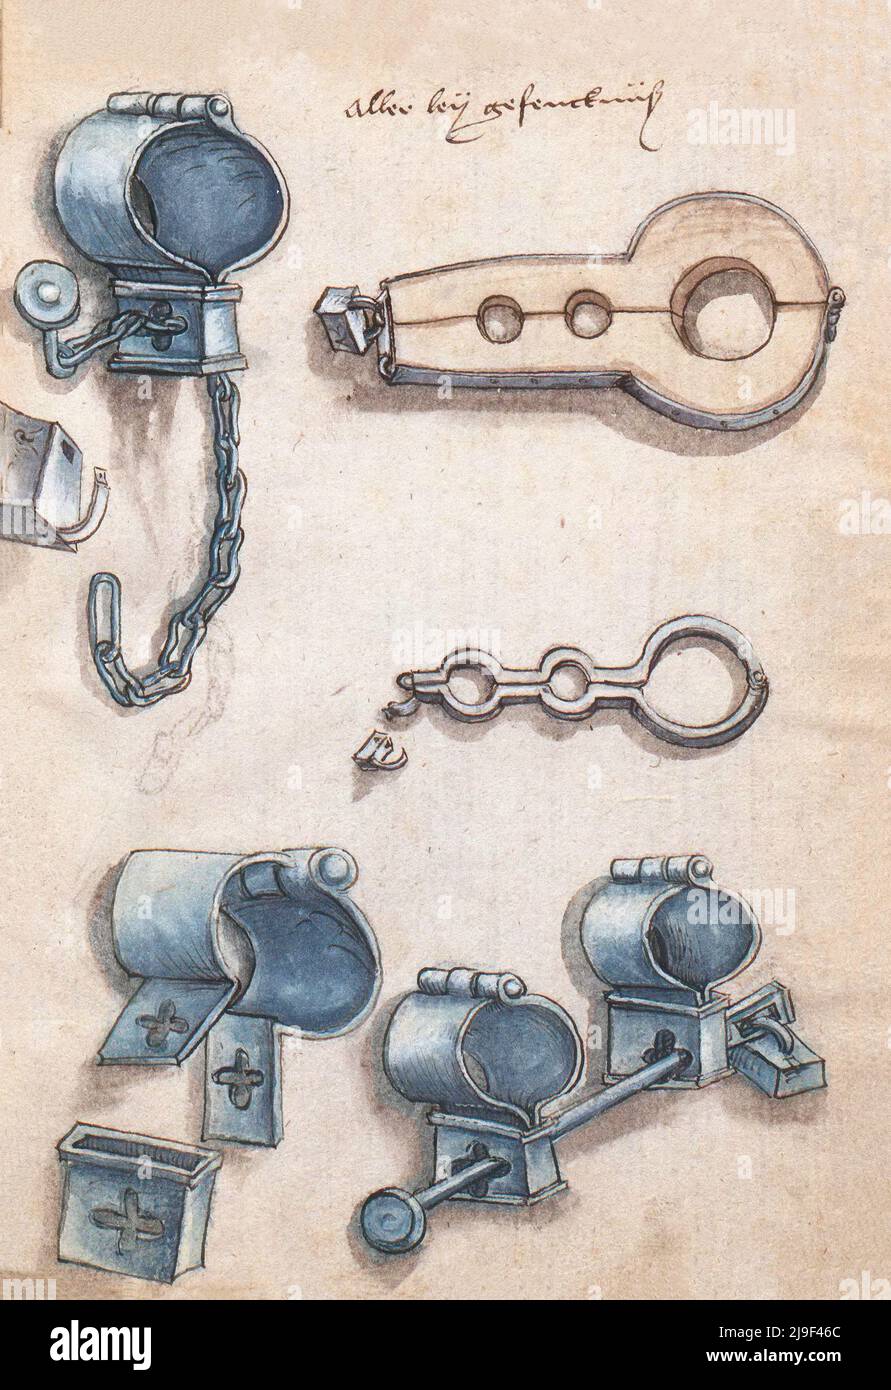 Illustrazione medievale di maniglioni. Gli strumenti di Martin Löffelholz (1505) Löffelholtz Codex. Illustrazioni e descrizioni di tutti i tipi di attrezzi manuali, Foto Stock